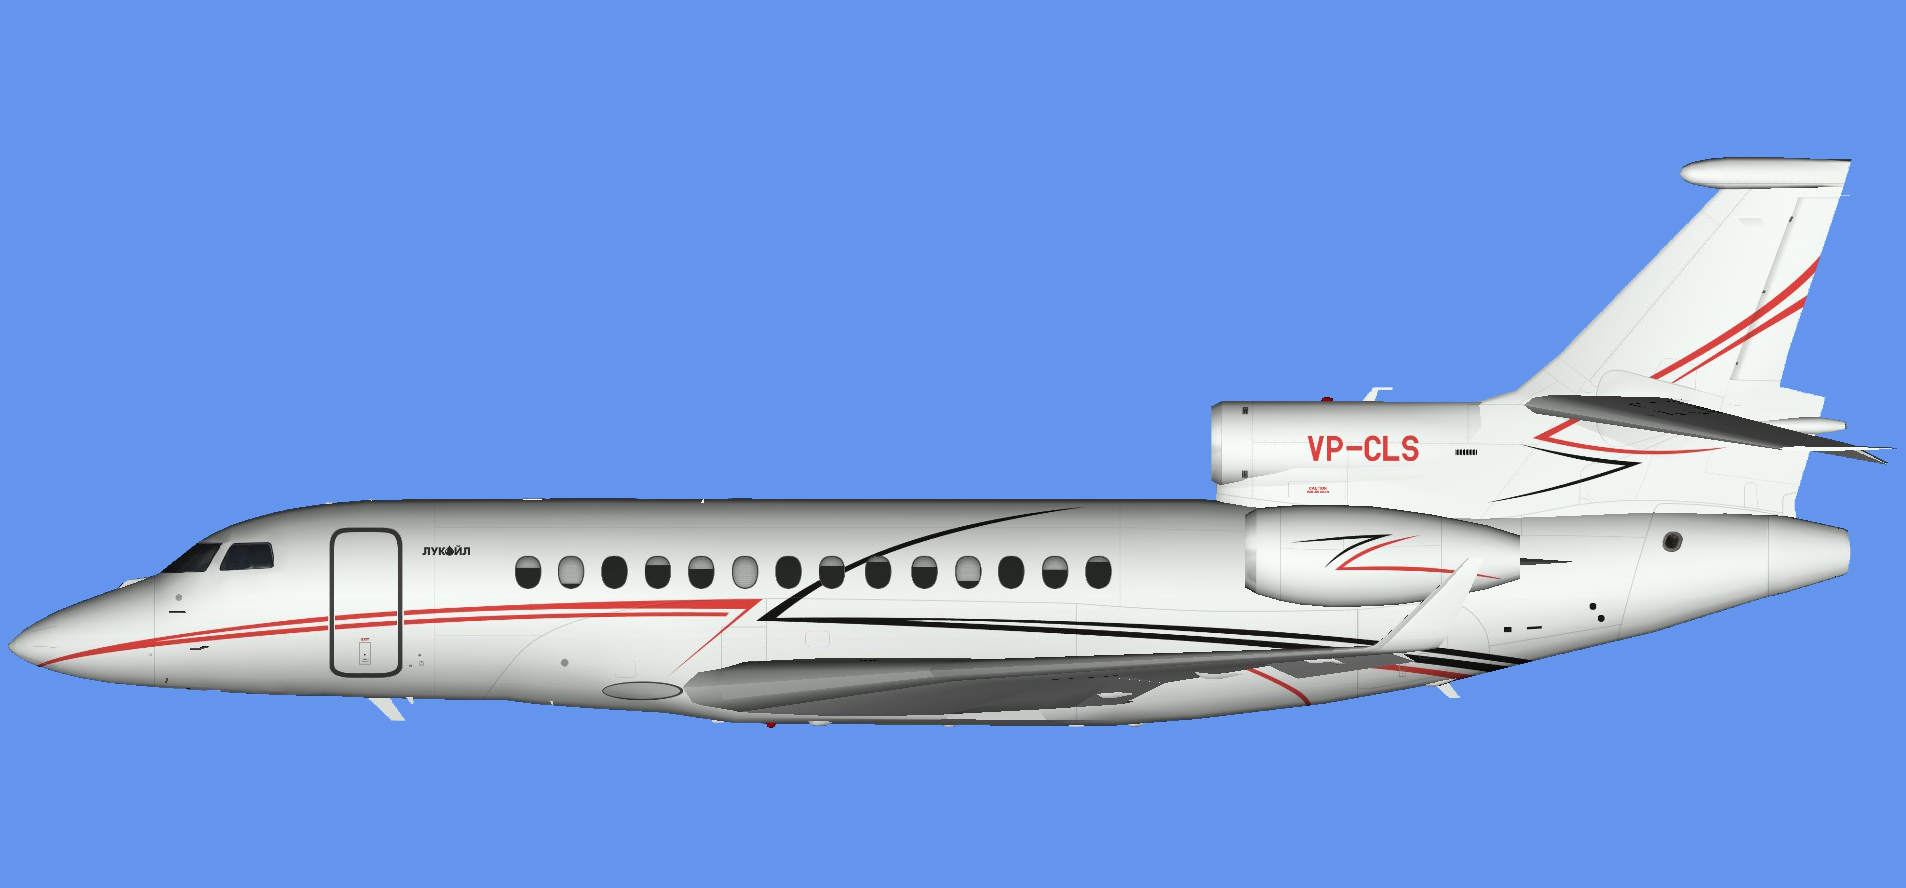 Dassault Falcon 7x VP-CLS